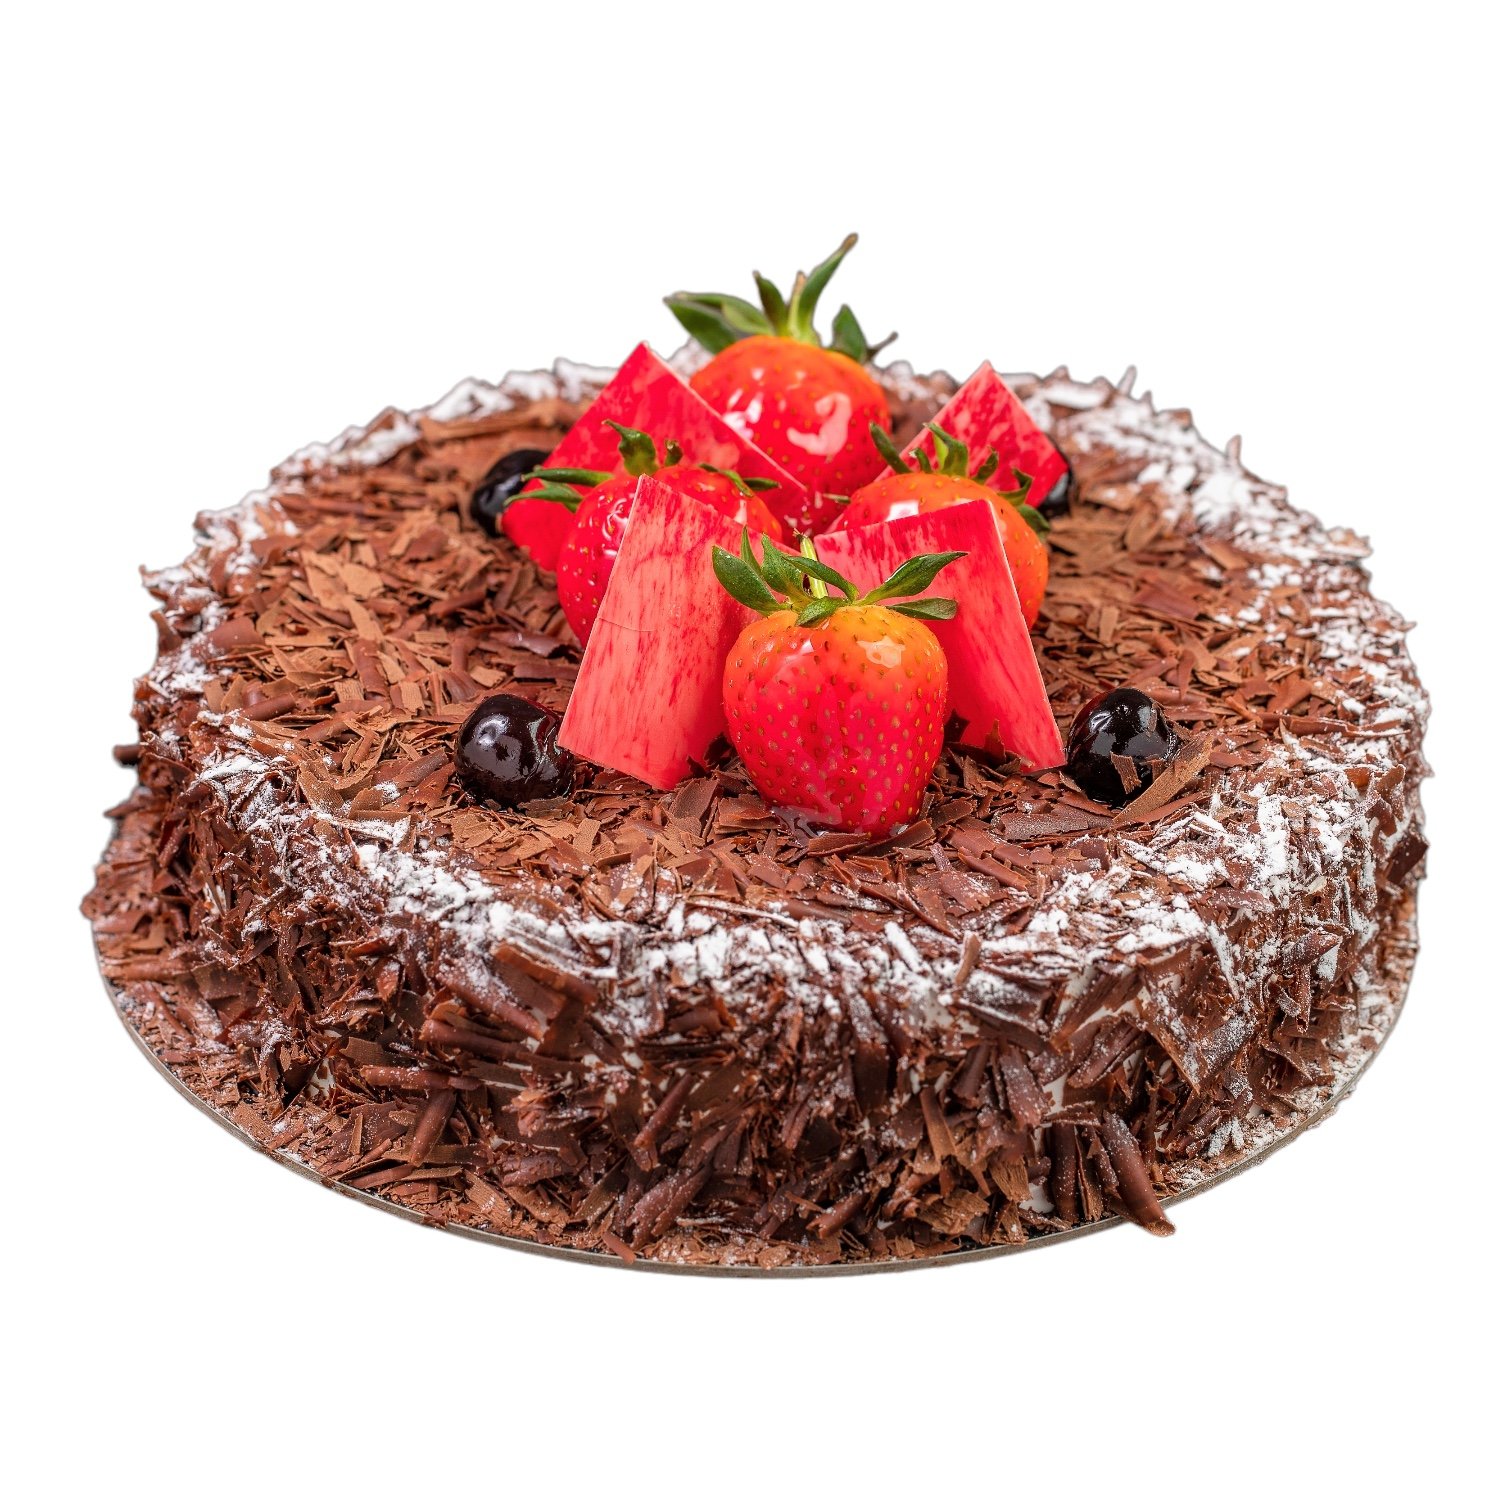 Cocos Cake Menu Best Chocolate Cakes in Dubai Order Online Best Chocolate  Cake in Dubai